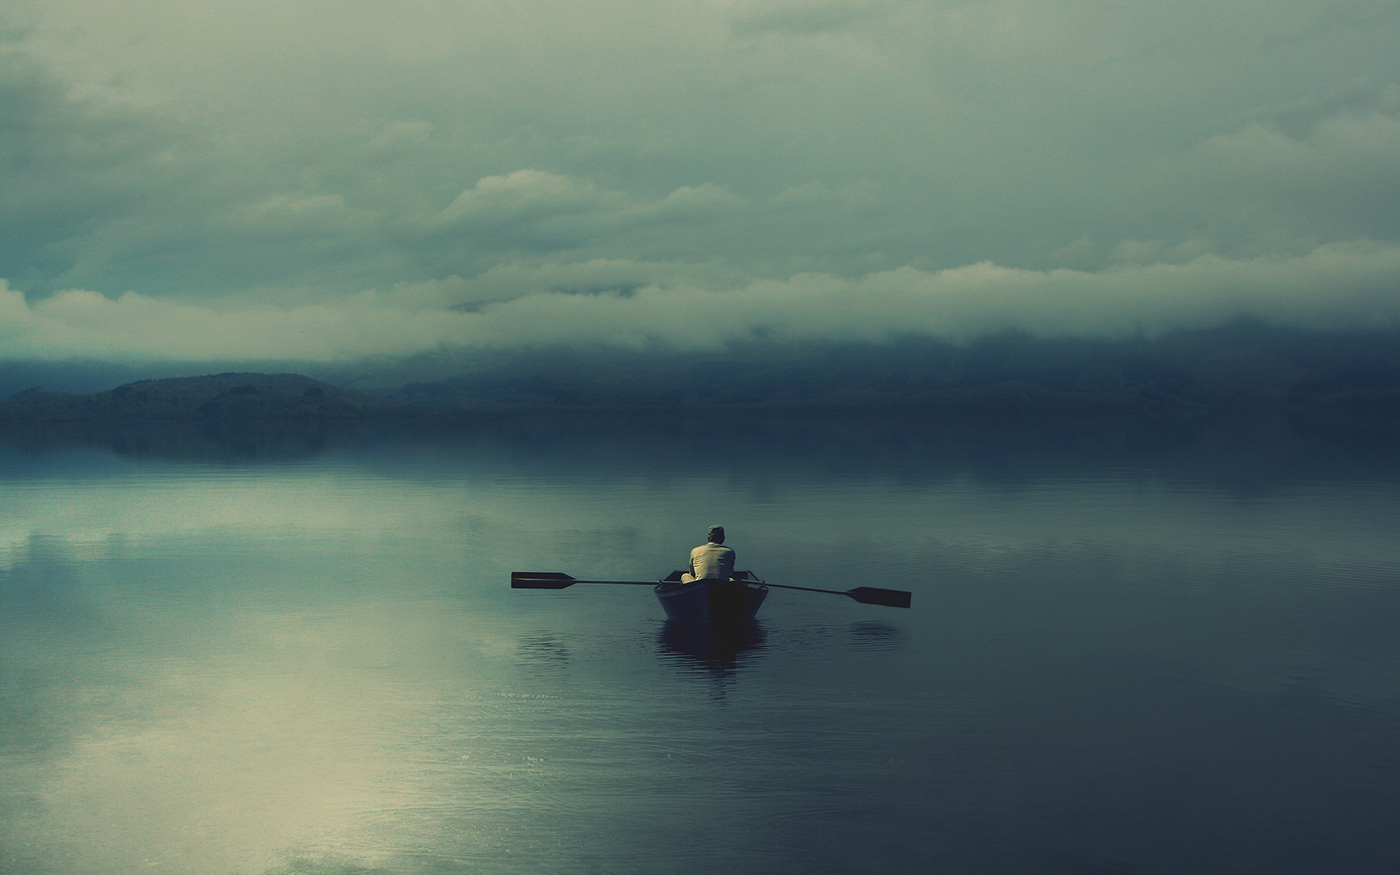 distant alone book cover album cover boat lake